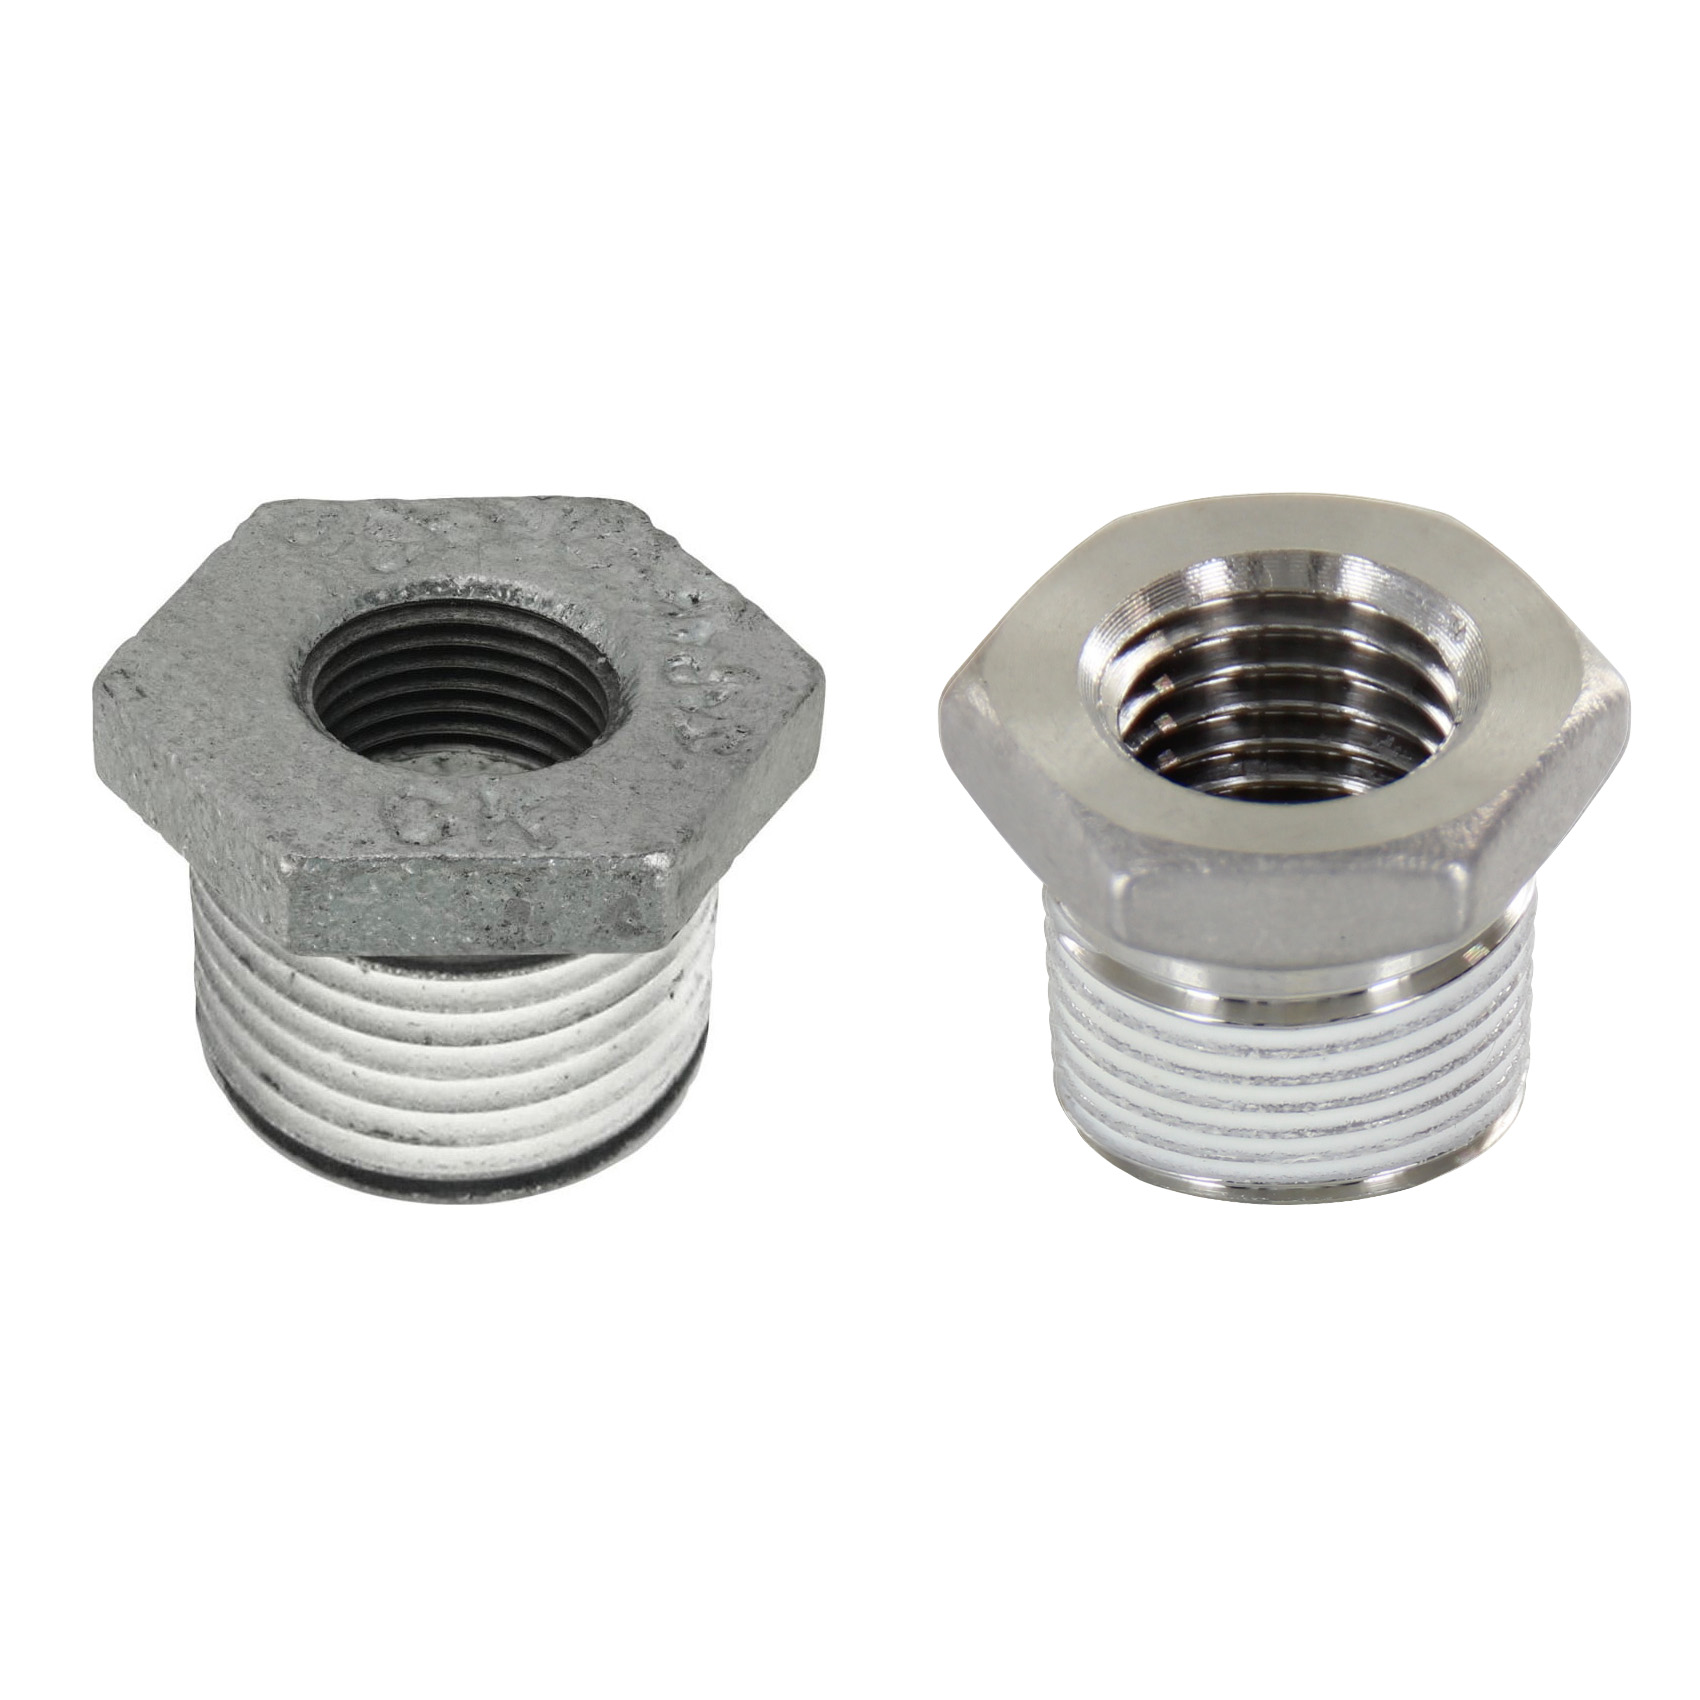 Low Pressure Screw Fittings - Thread Coated Type - Steel Pipe Fittings - Bushings SGCPB46